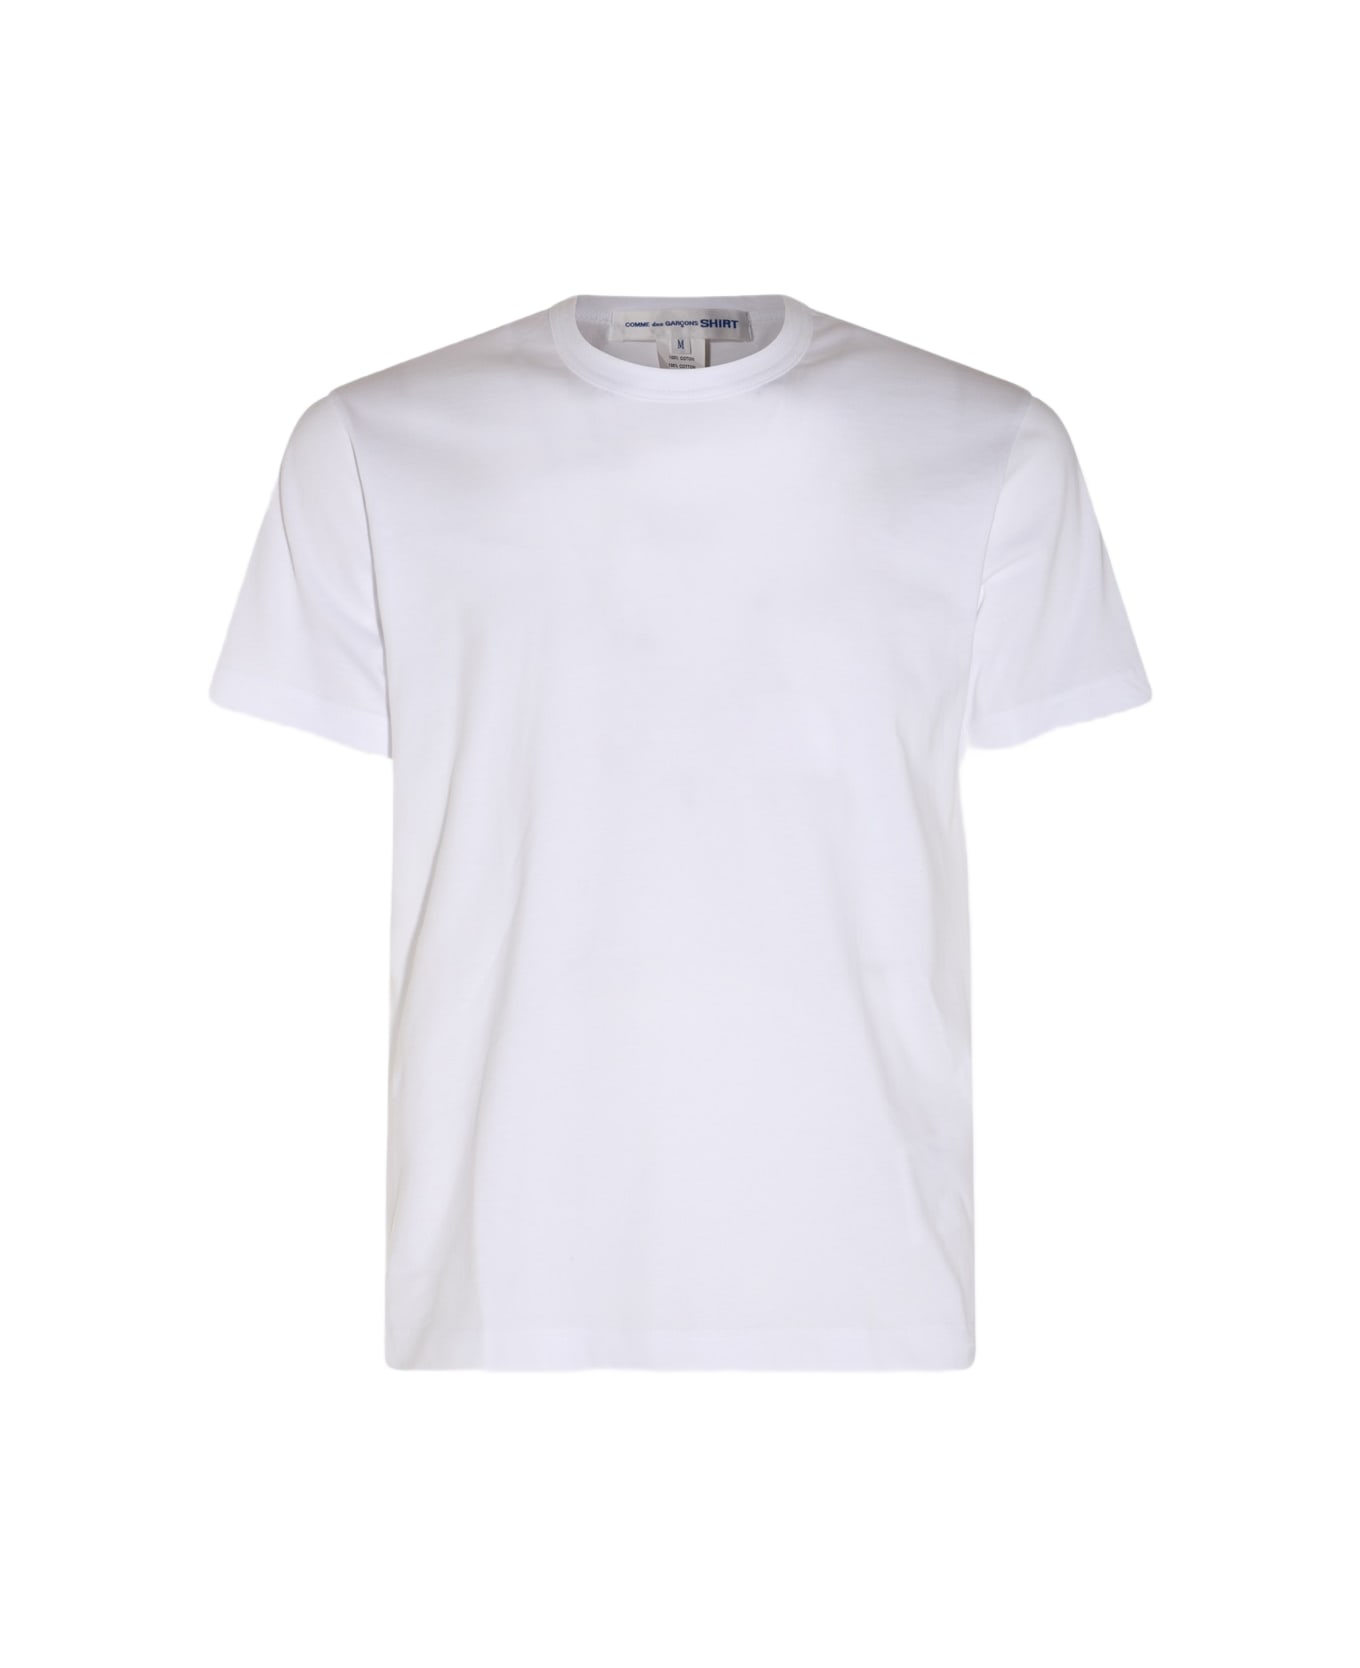 Comme des Garçons White Cotton T-shirt - TOP GREY シャツ